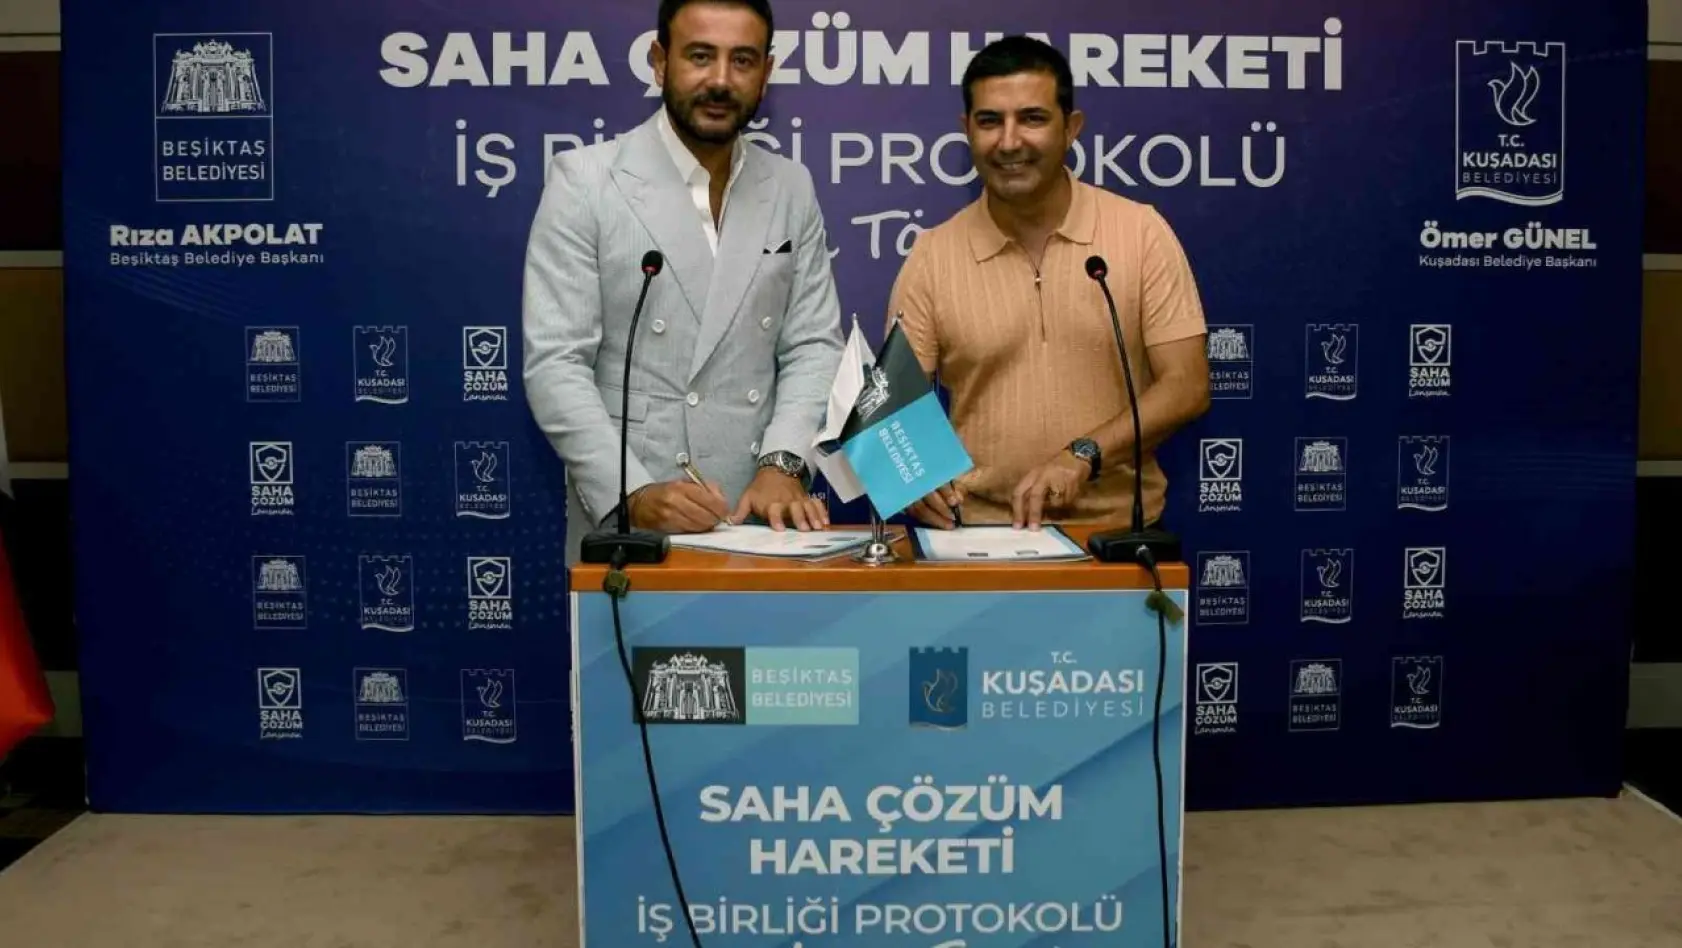 Kuşadası ve Beşiktaş Belediyeleri'nden 'Sahada Çözüm' için iş birliği protokolü